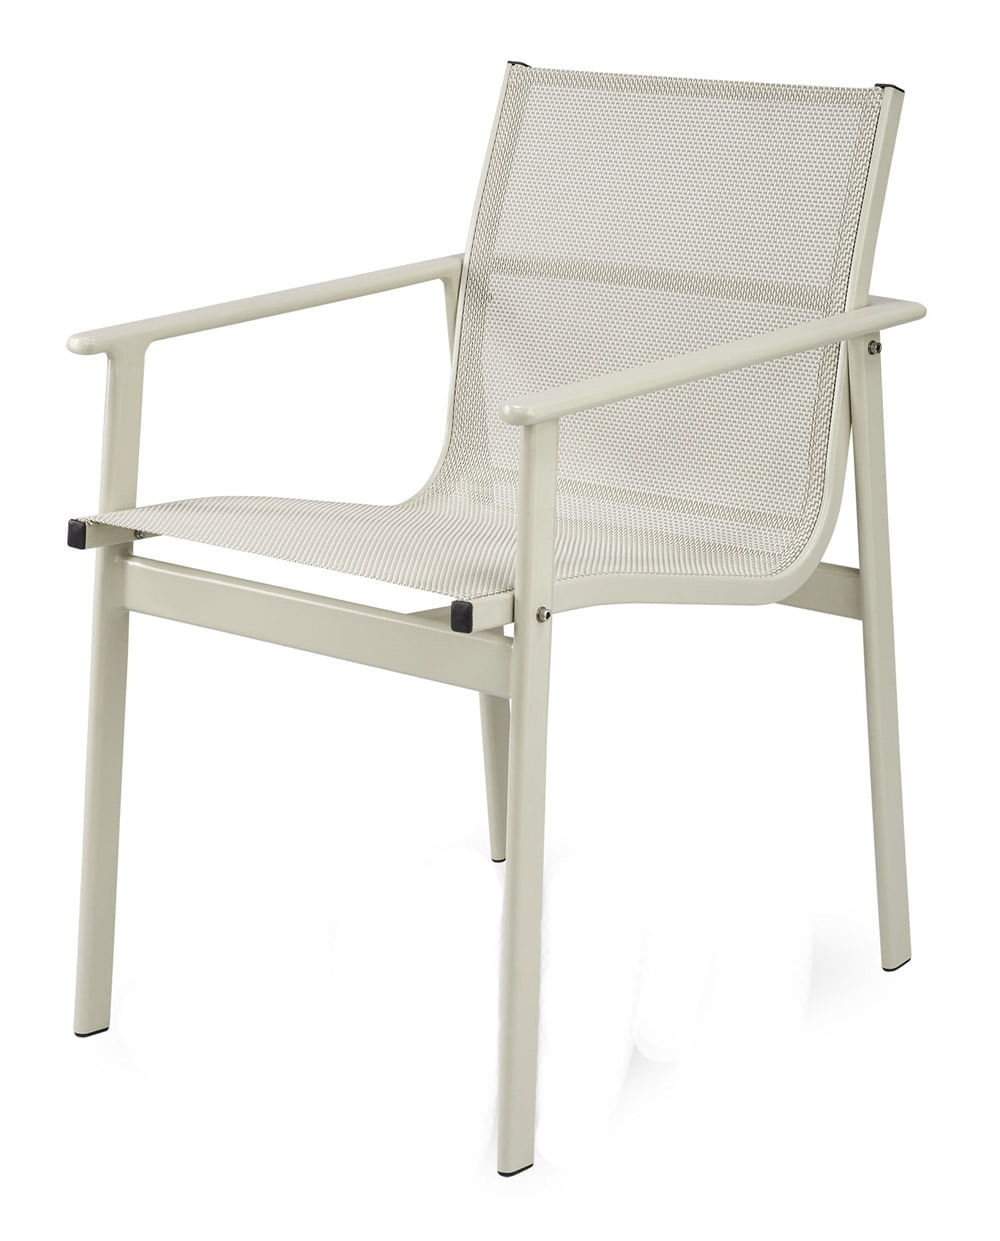 Cadeira Solano Assento em Tela Sintetica cor Branca com Base Aluminio - 44546